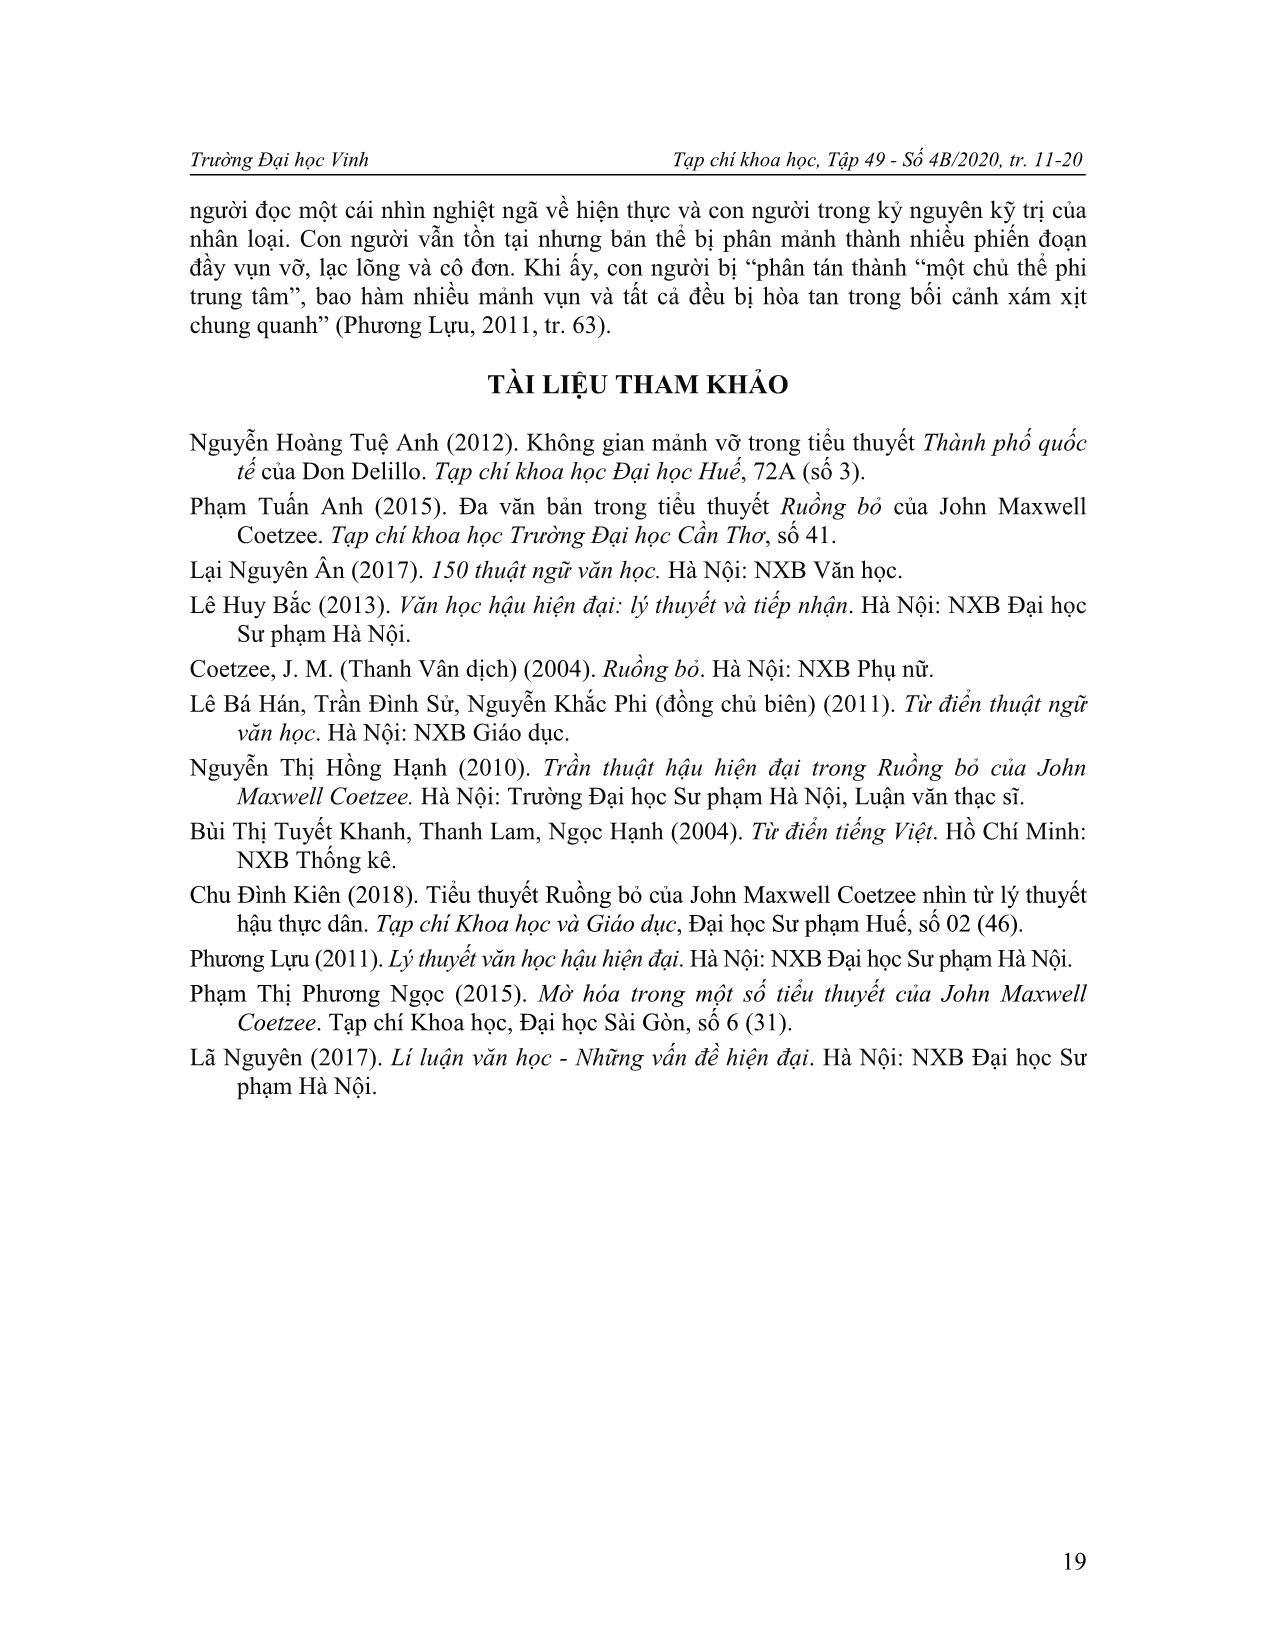 Yếu tố phân mảnh trong tiểu thuyết ruồng bỏ của john maxwell coetzee trang 9